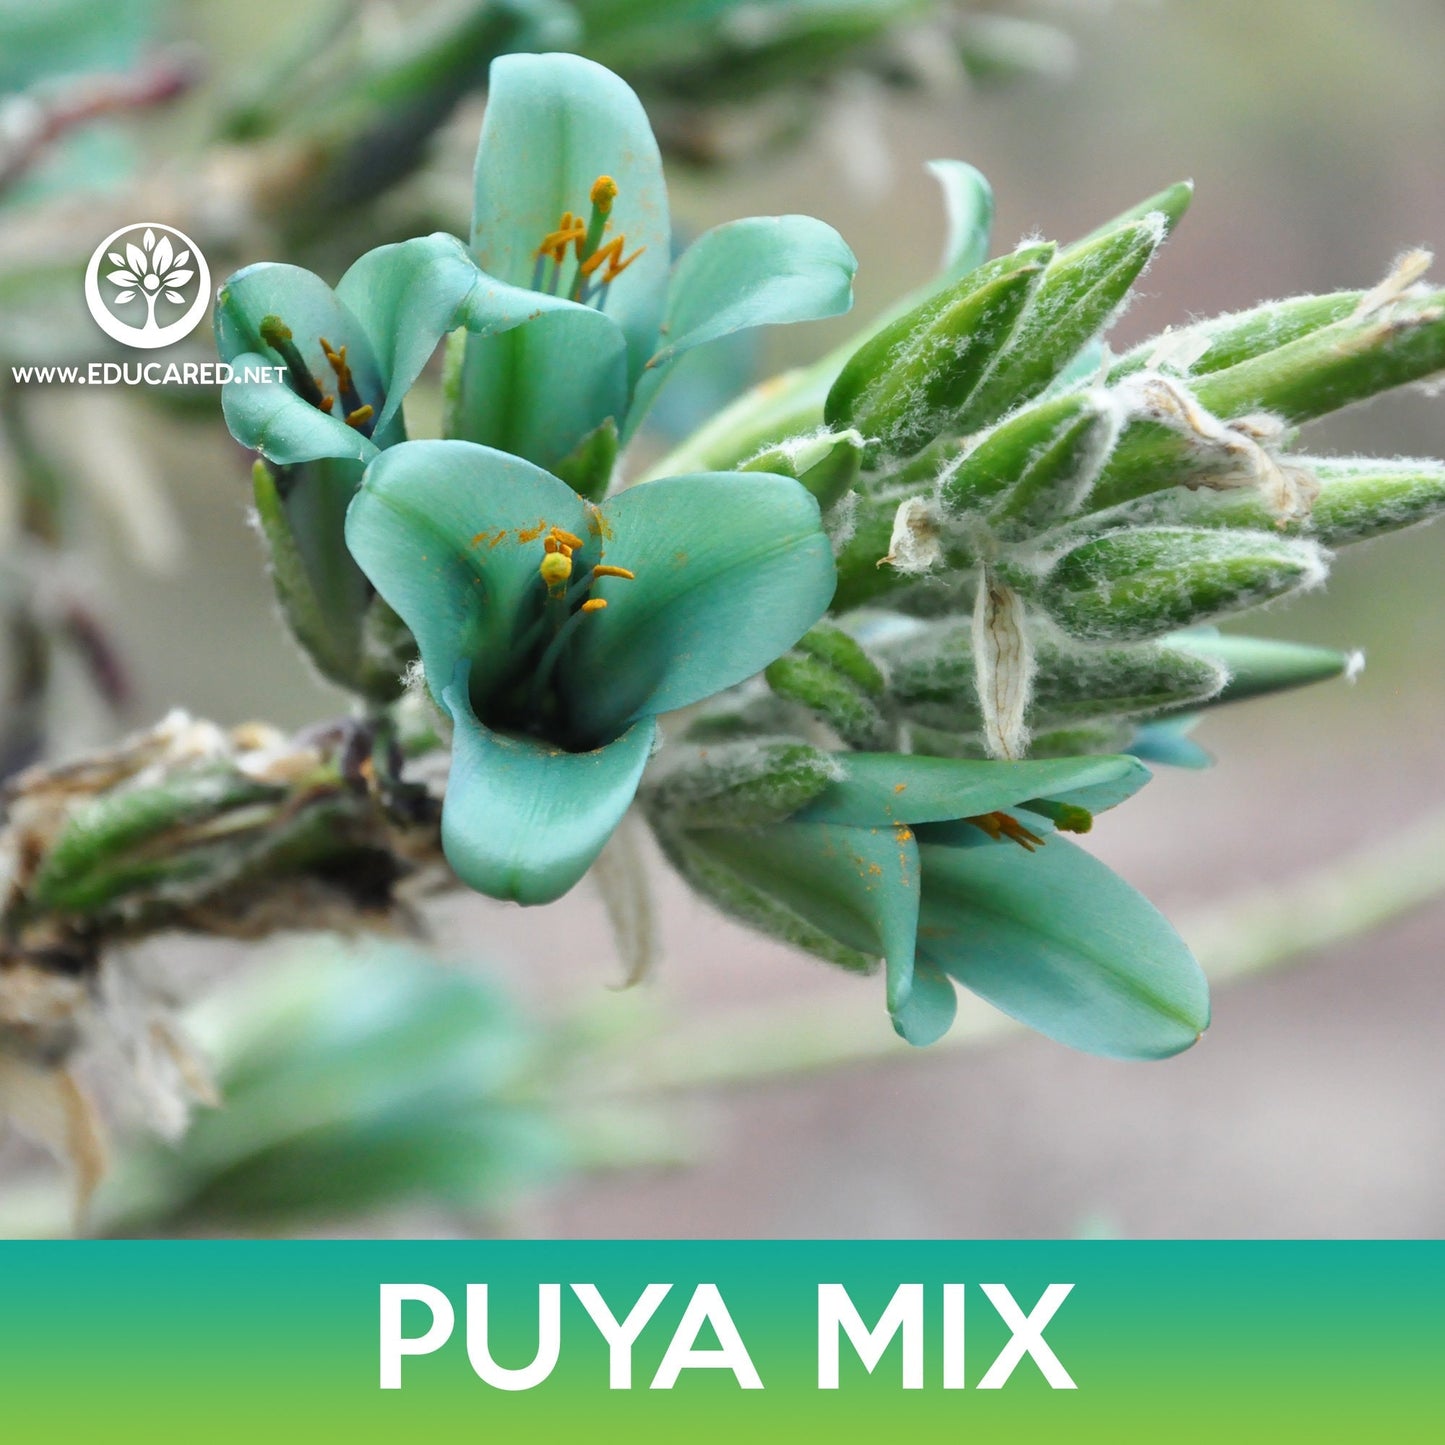 Puya Succulent Mix Seeds